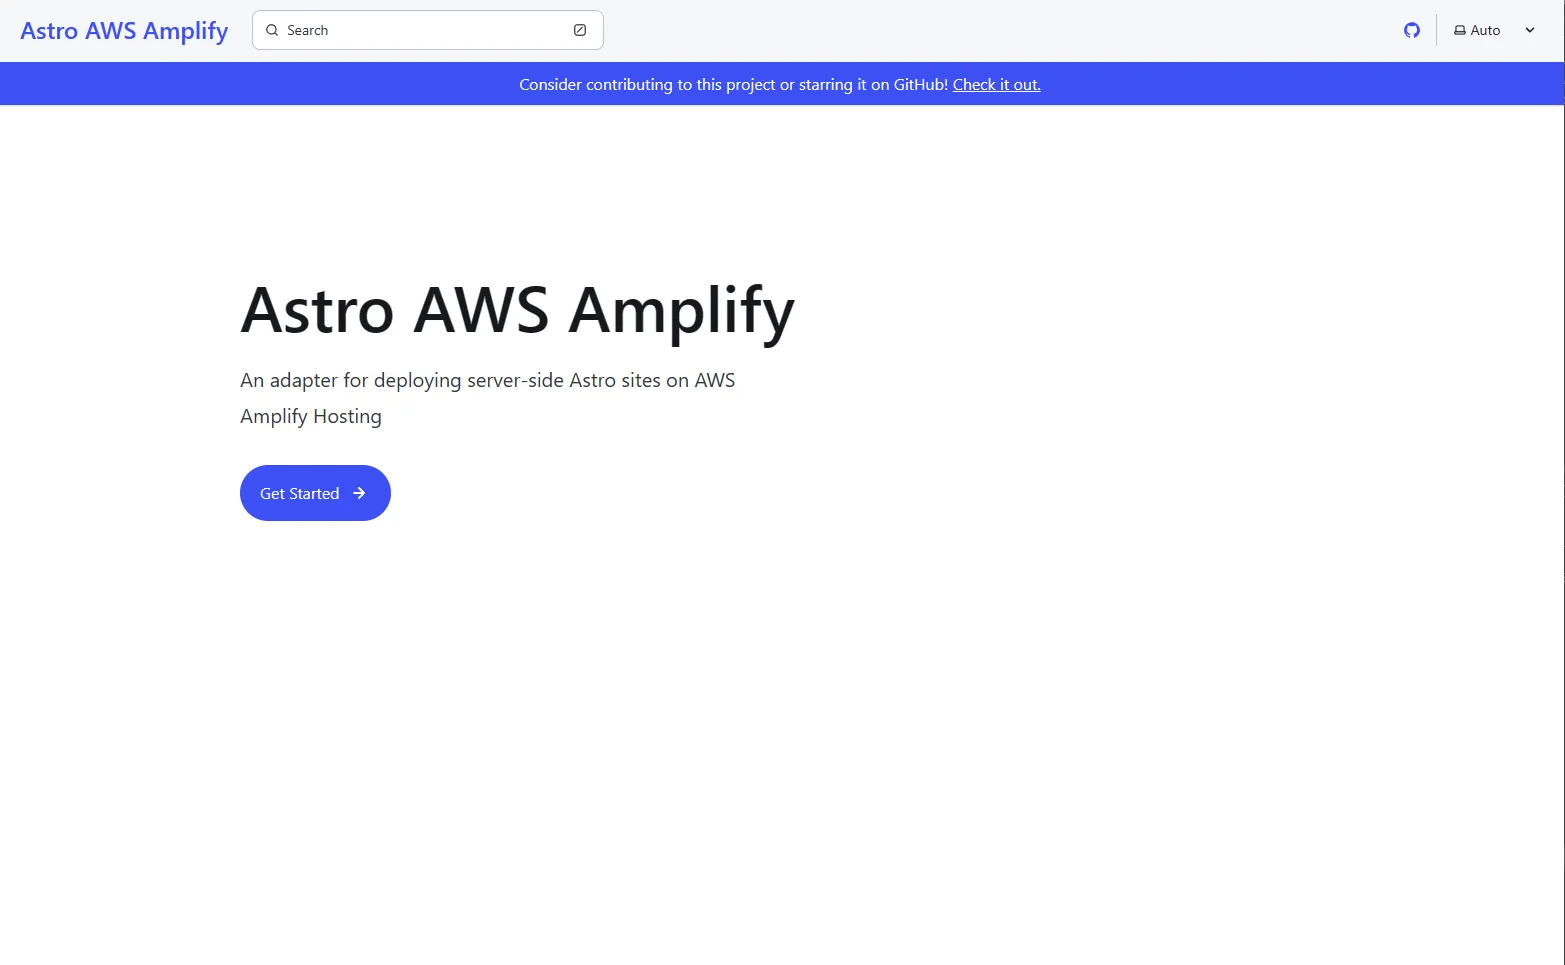 Astro AWS Amplify